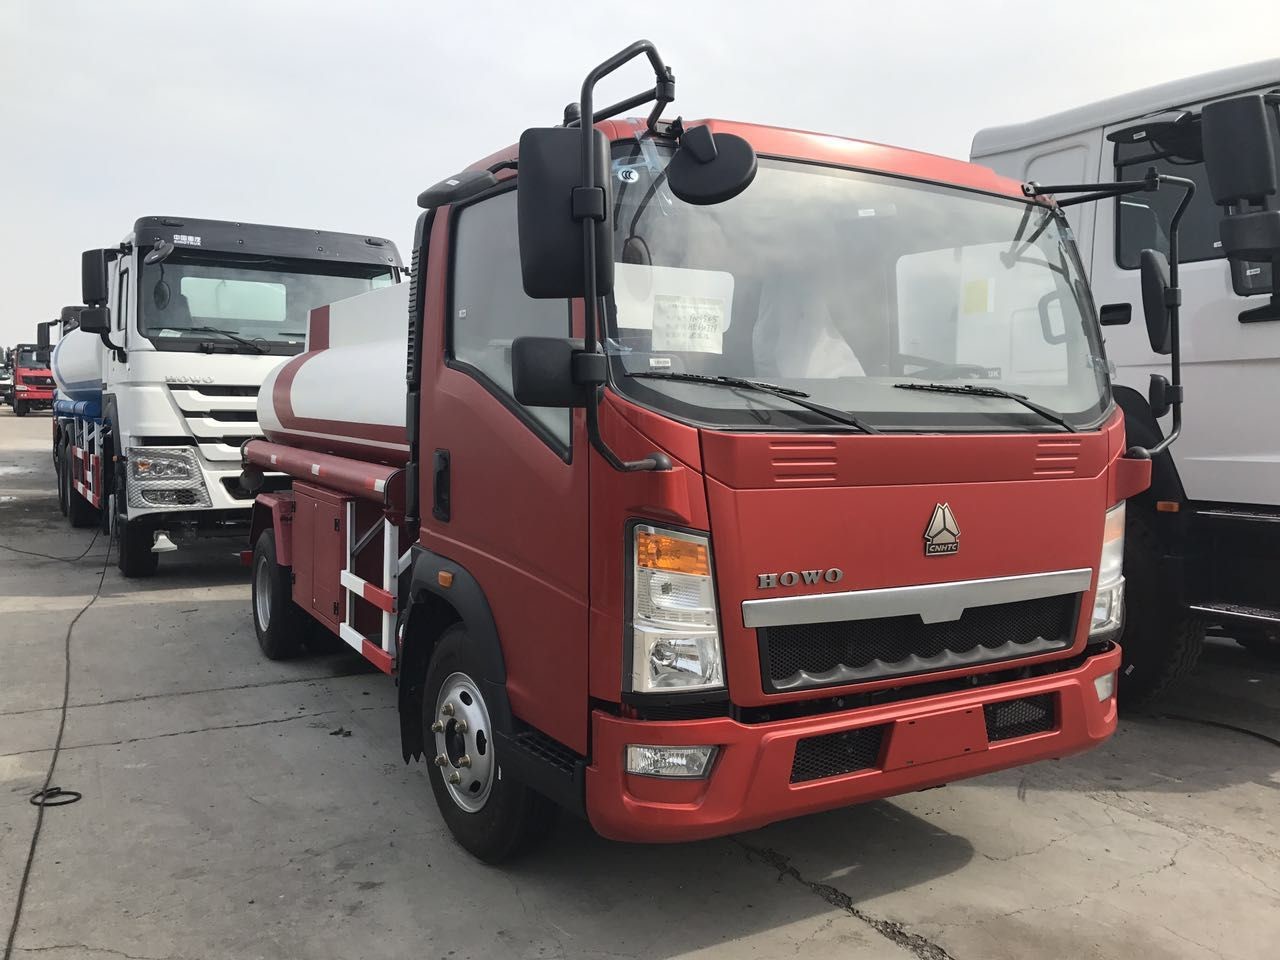 De Vrachtwagen5m3 Capaciteit van de rode Kleuren85kw Stookolie met Pomp en Kanonccc